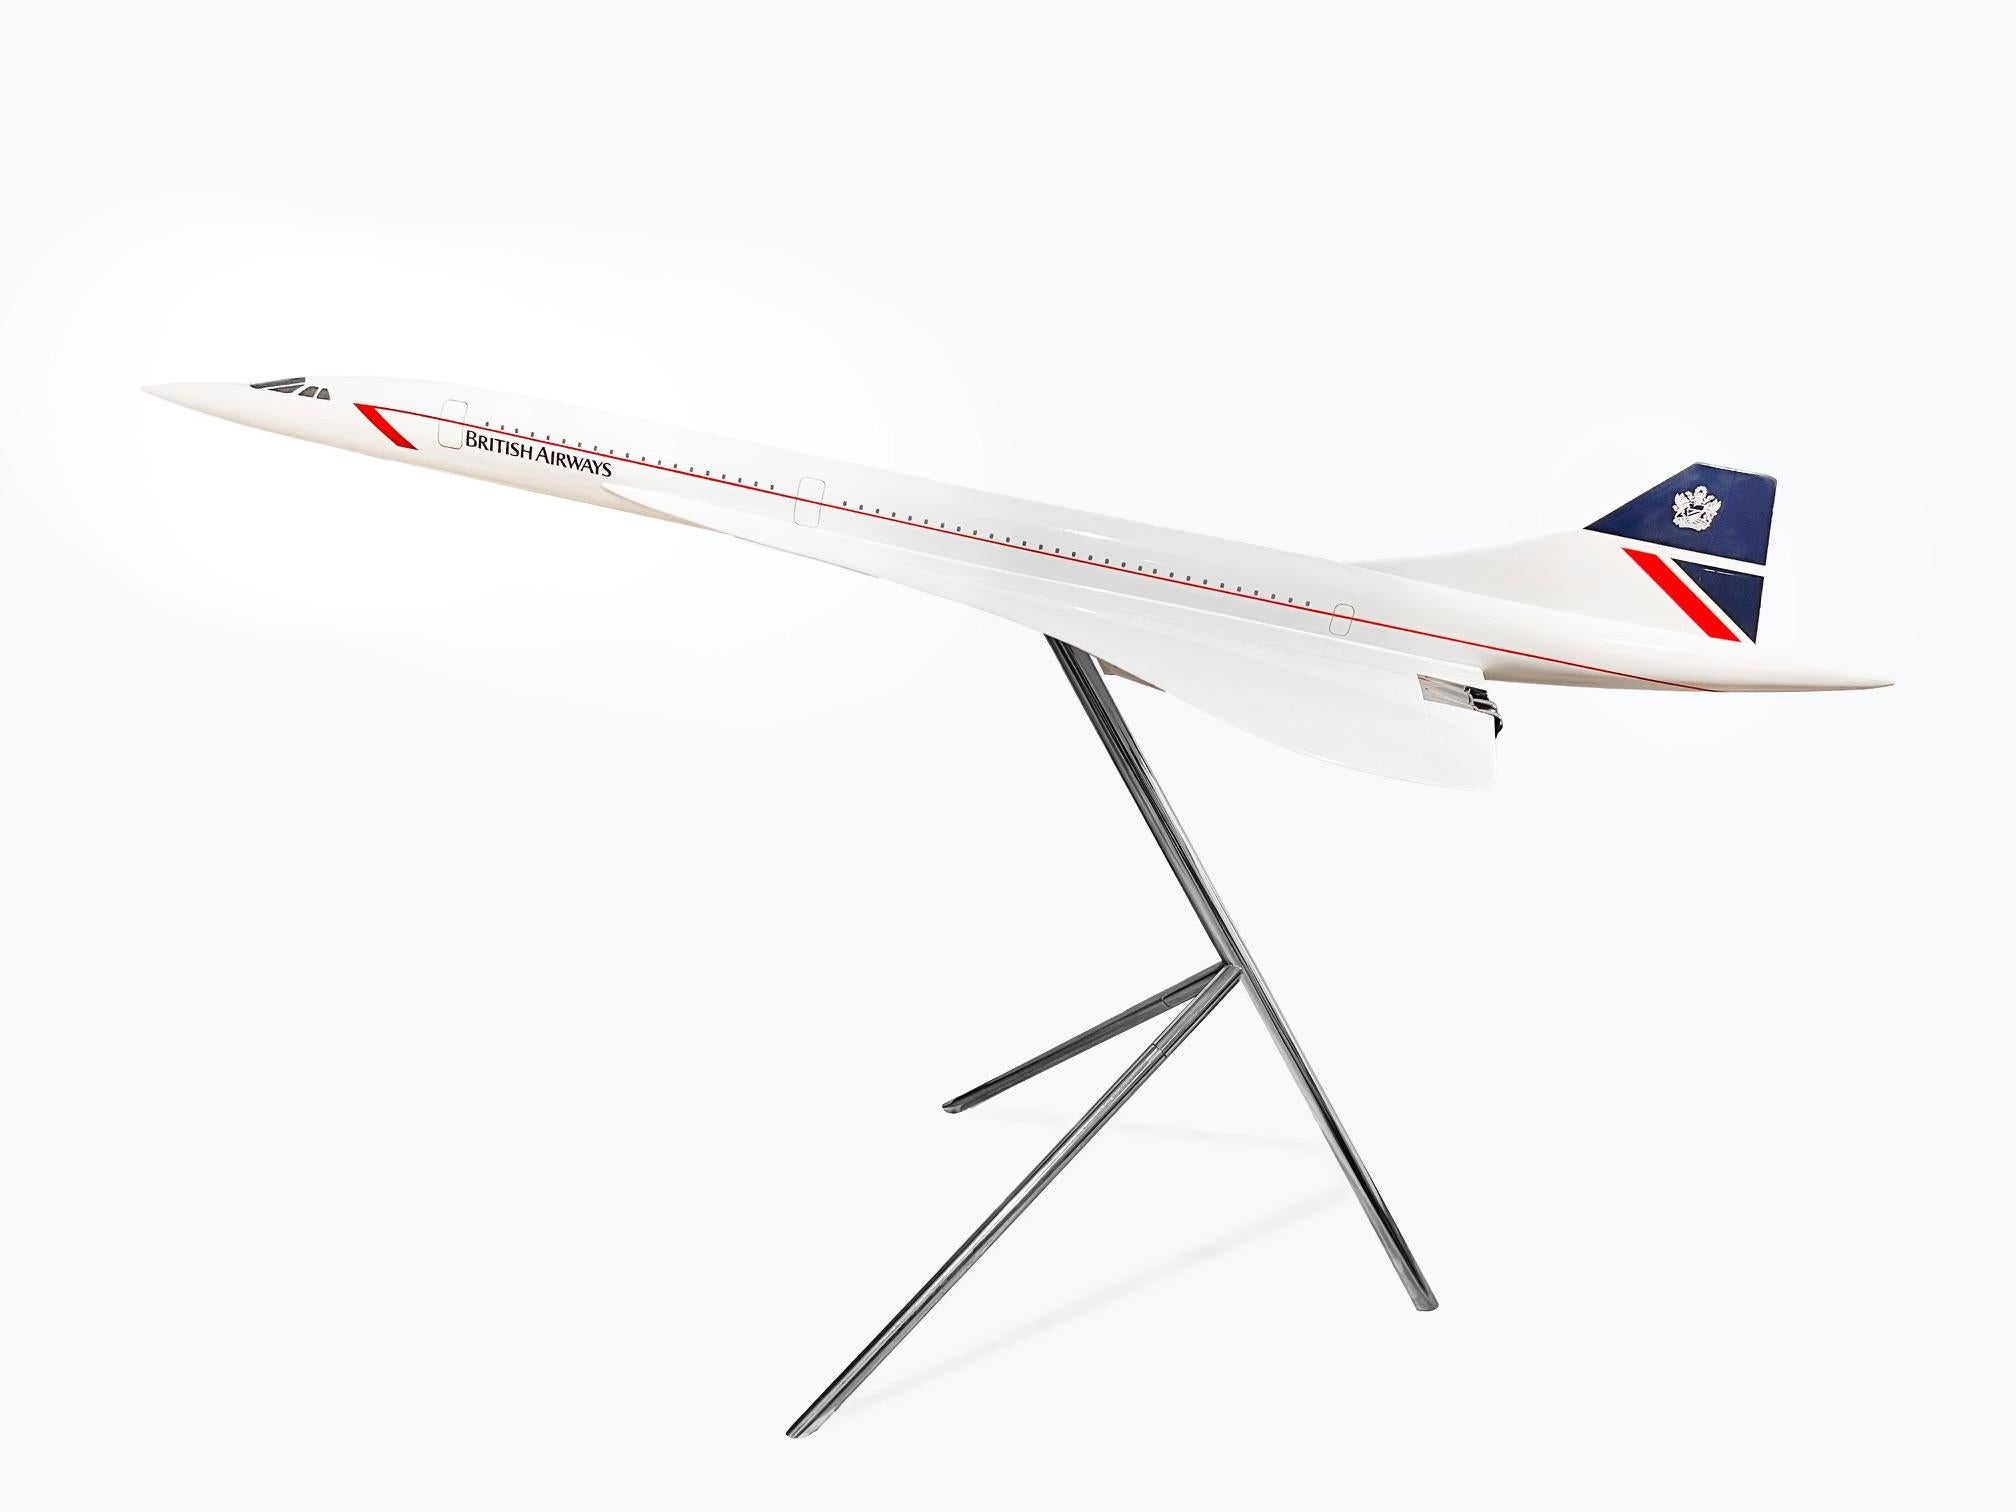 British Airways Large Scale Model "Concorde"